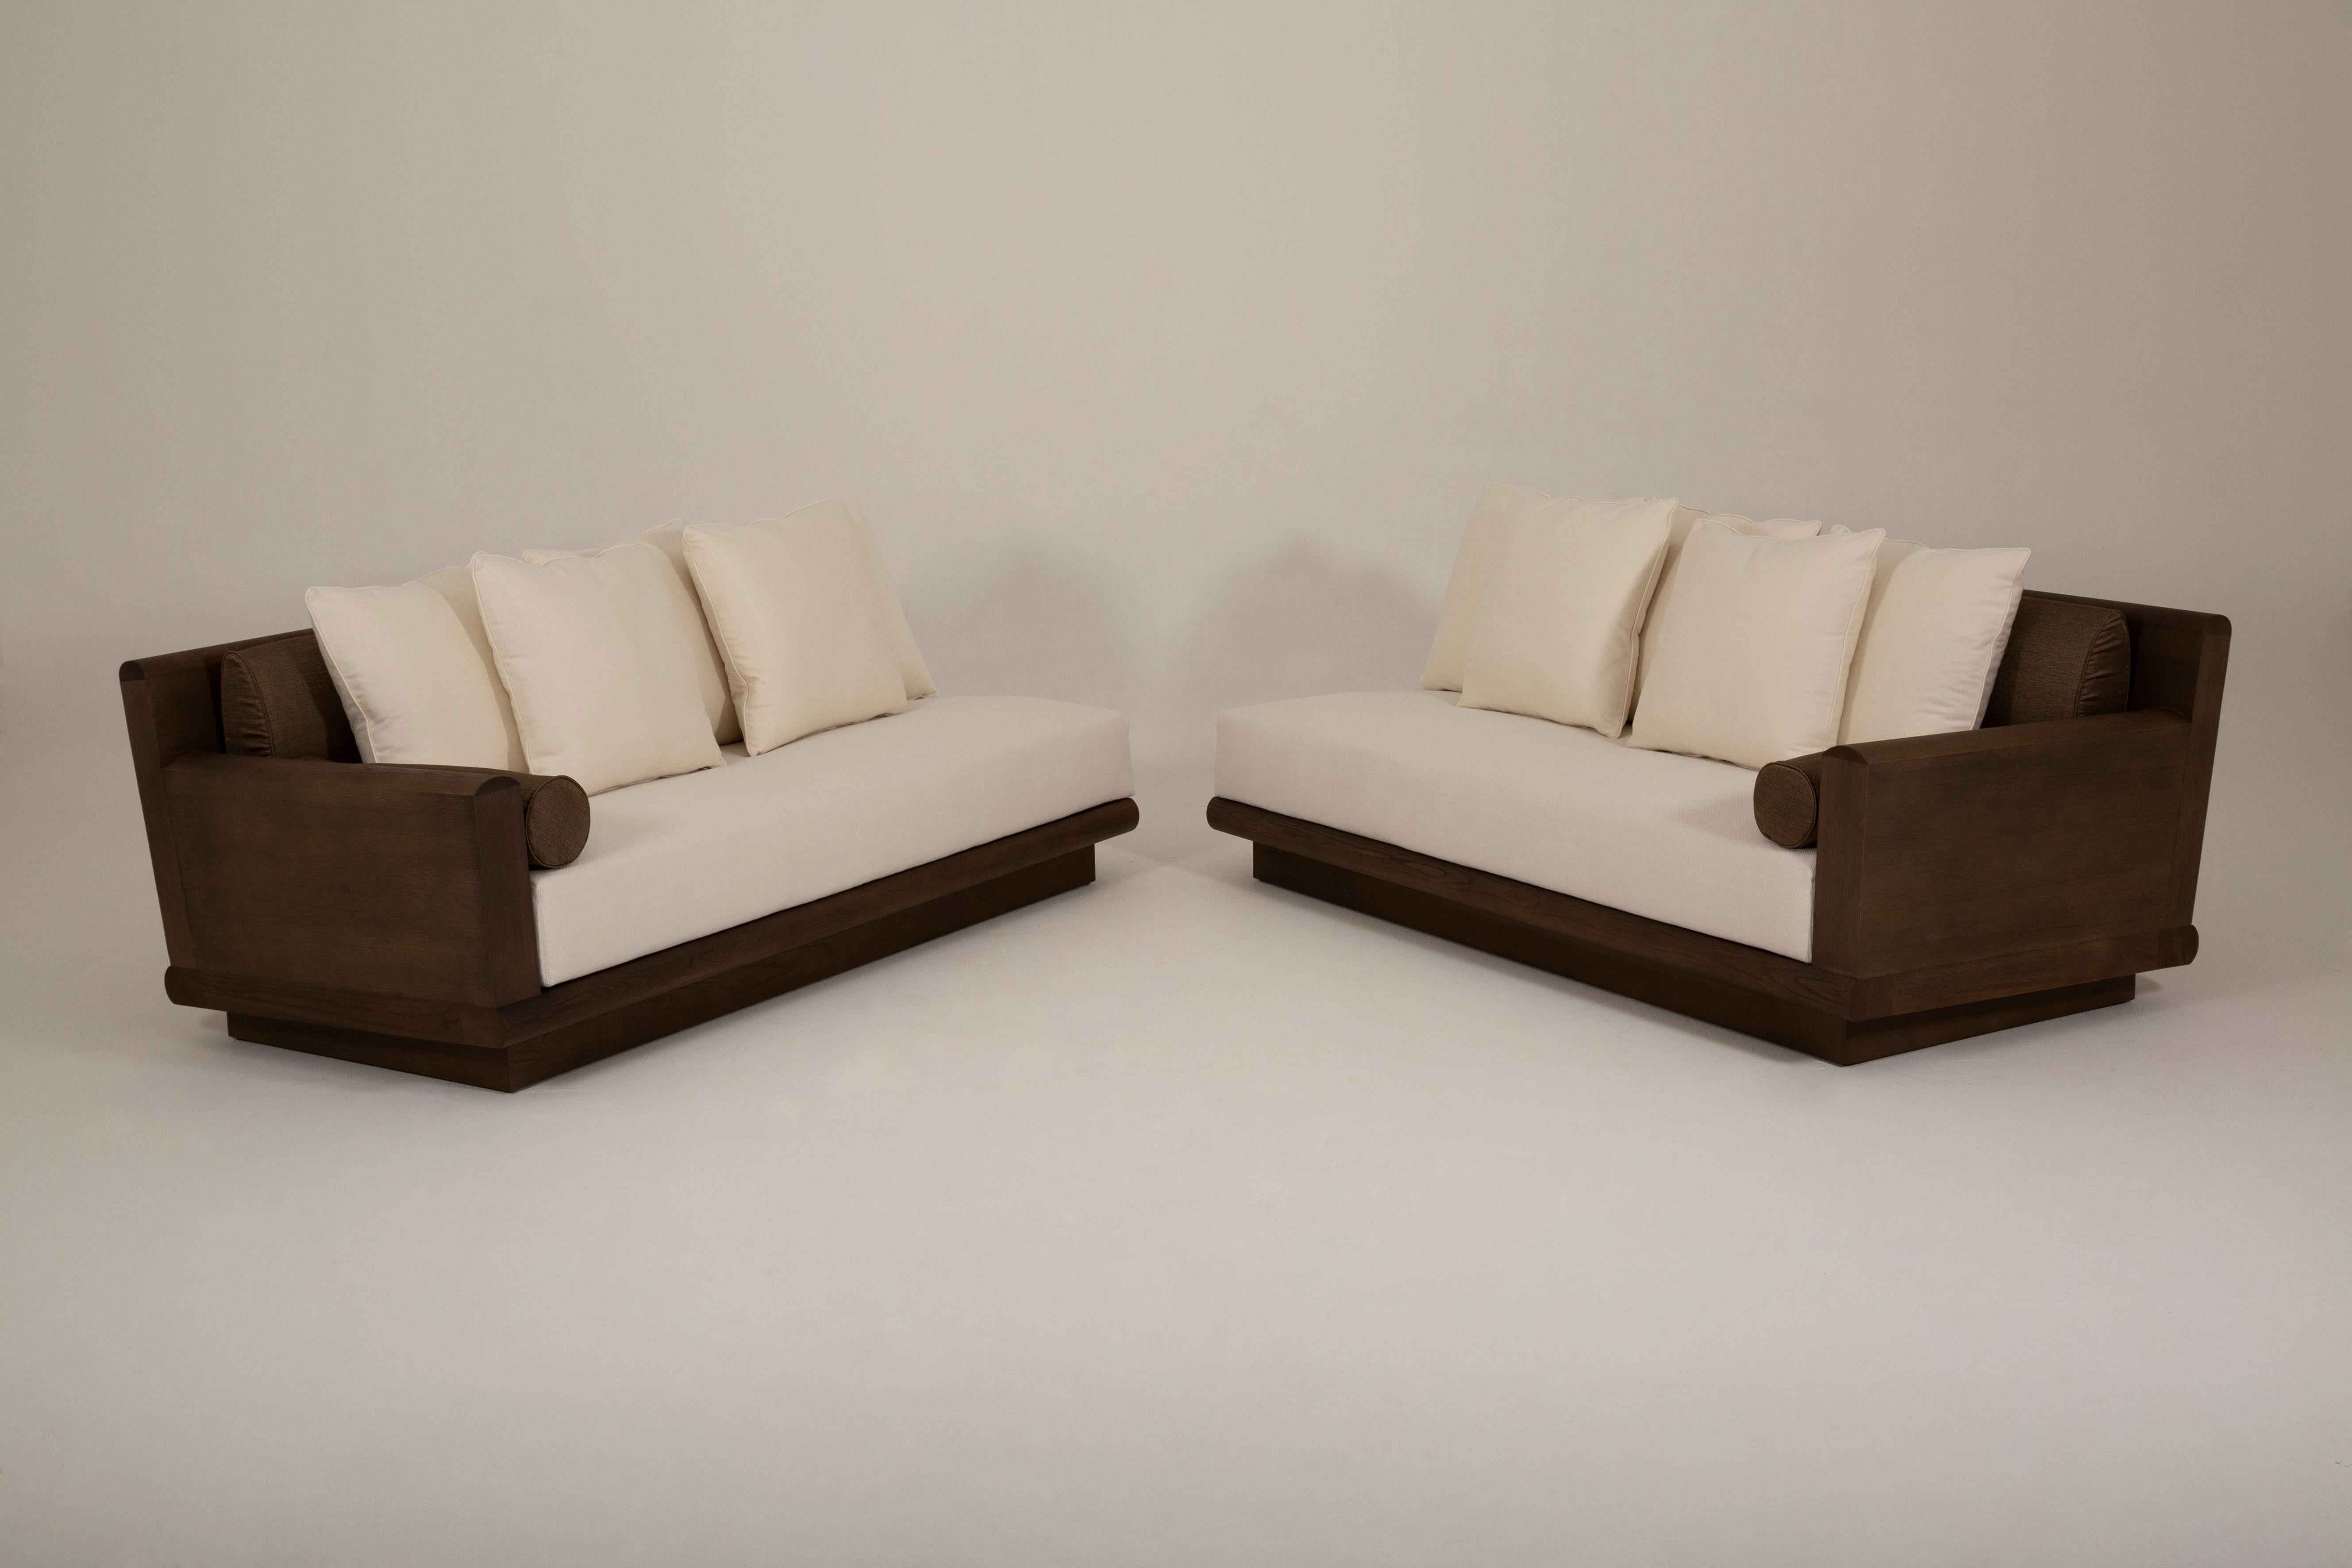 Das Sofa Asafis wird 2023 von Atelier Linné hergestellt. Die Struktur des Sofas ist aus gebürsteter Eiche, das Sitzkissen ist aus Schaumstoff mit abgerundeten Kanten an der Vorderseite. Die Rückenlehne besteht aus 2 ovalen Schaumstoff-Rückenkissen,